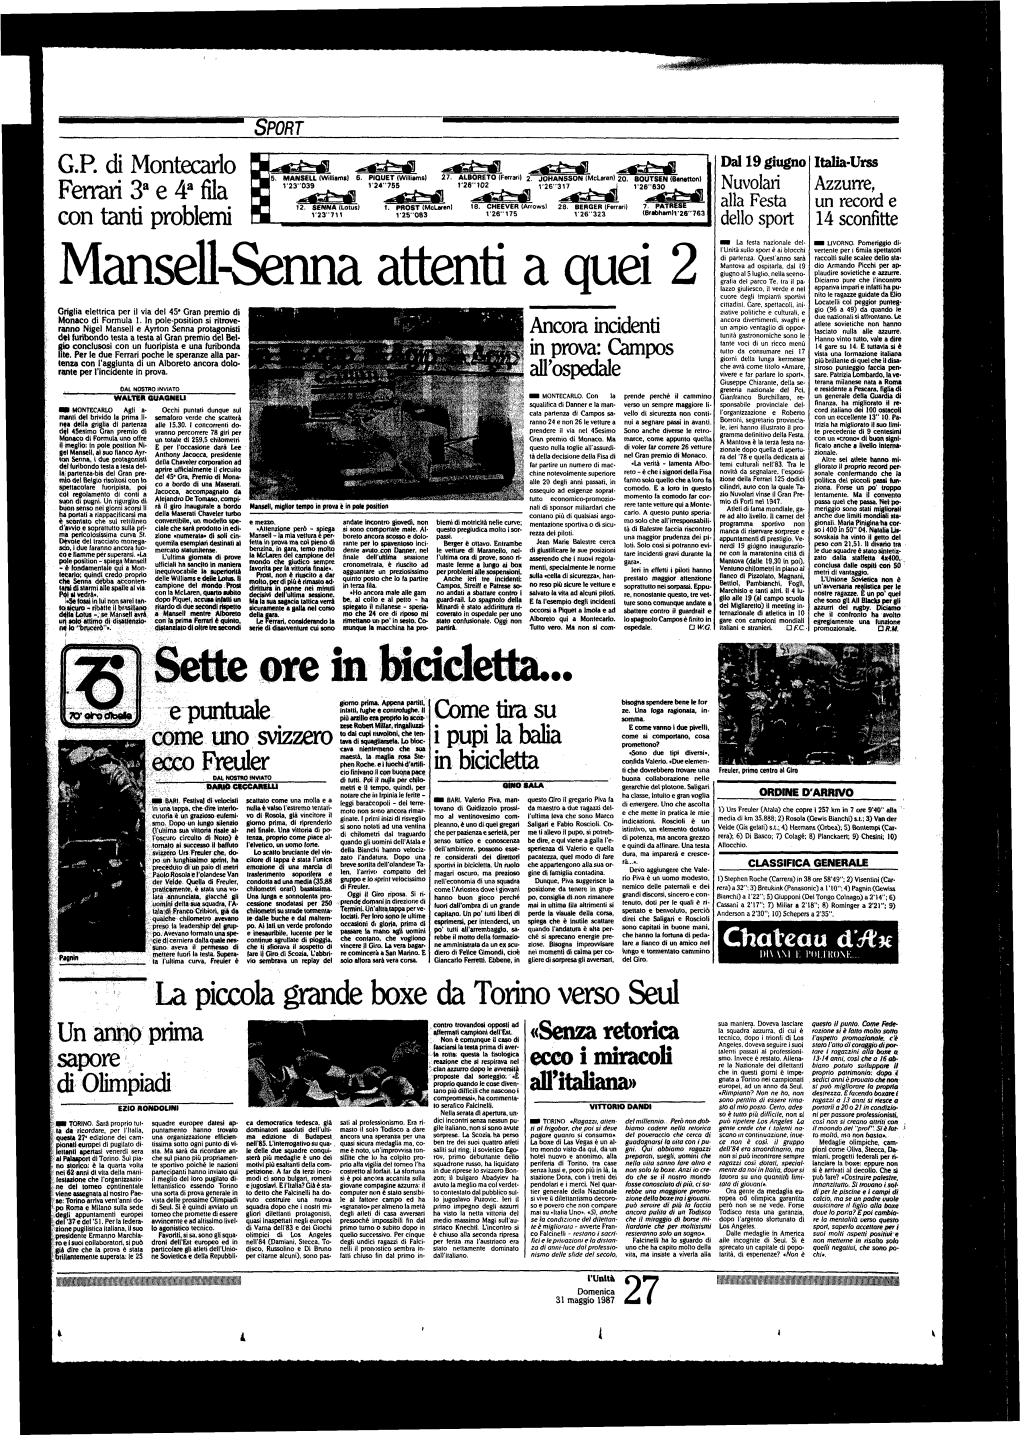 Mansell-Senna Attenti a Quei 2 Nito Le Ragazze Guidate Da Elio Cuore Degli Impianti Sportivi Locateli! Col Peggior Punteg­ Cittadini